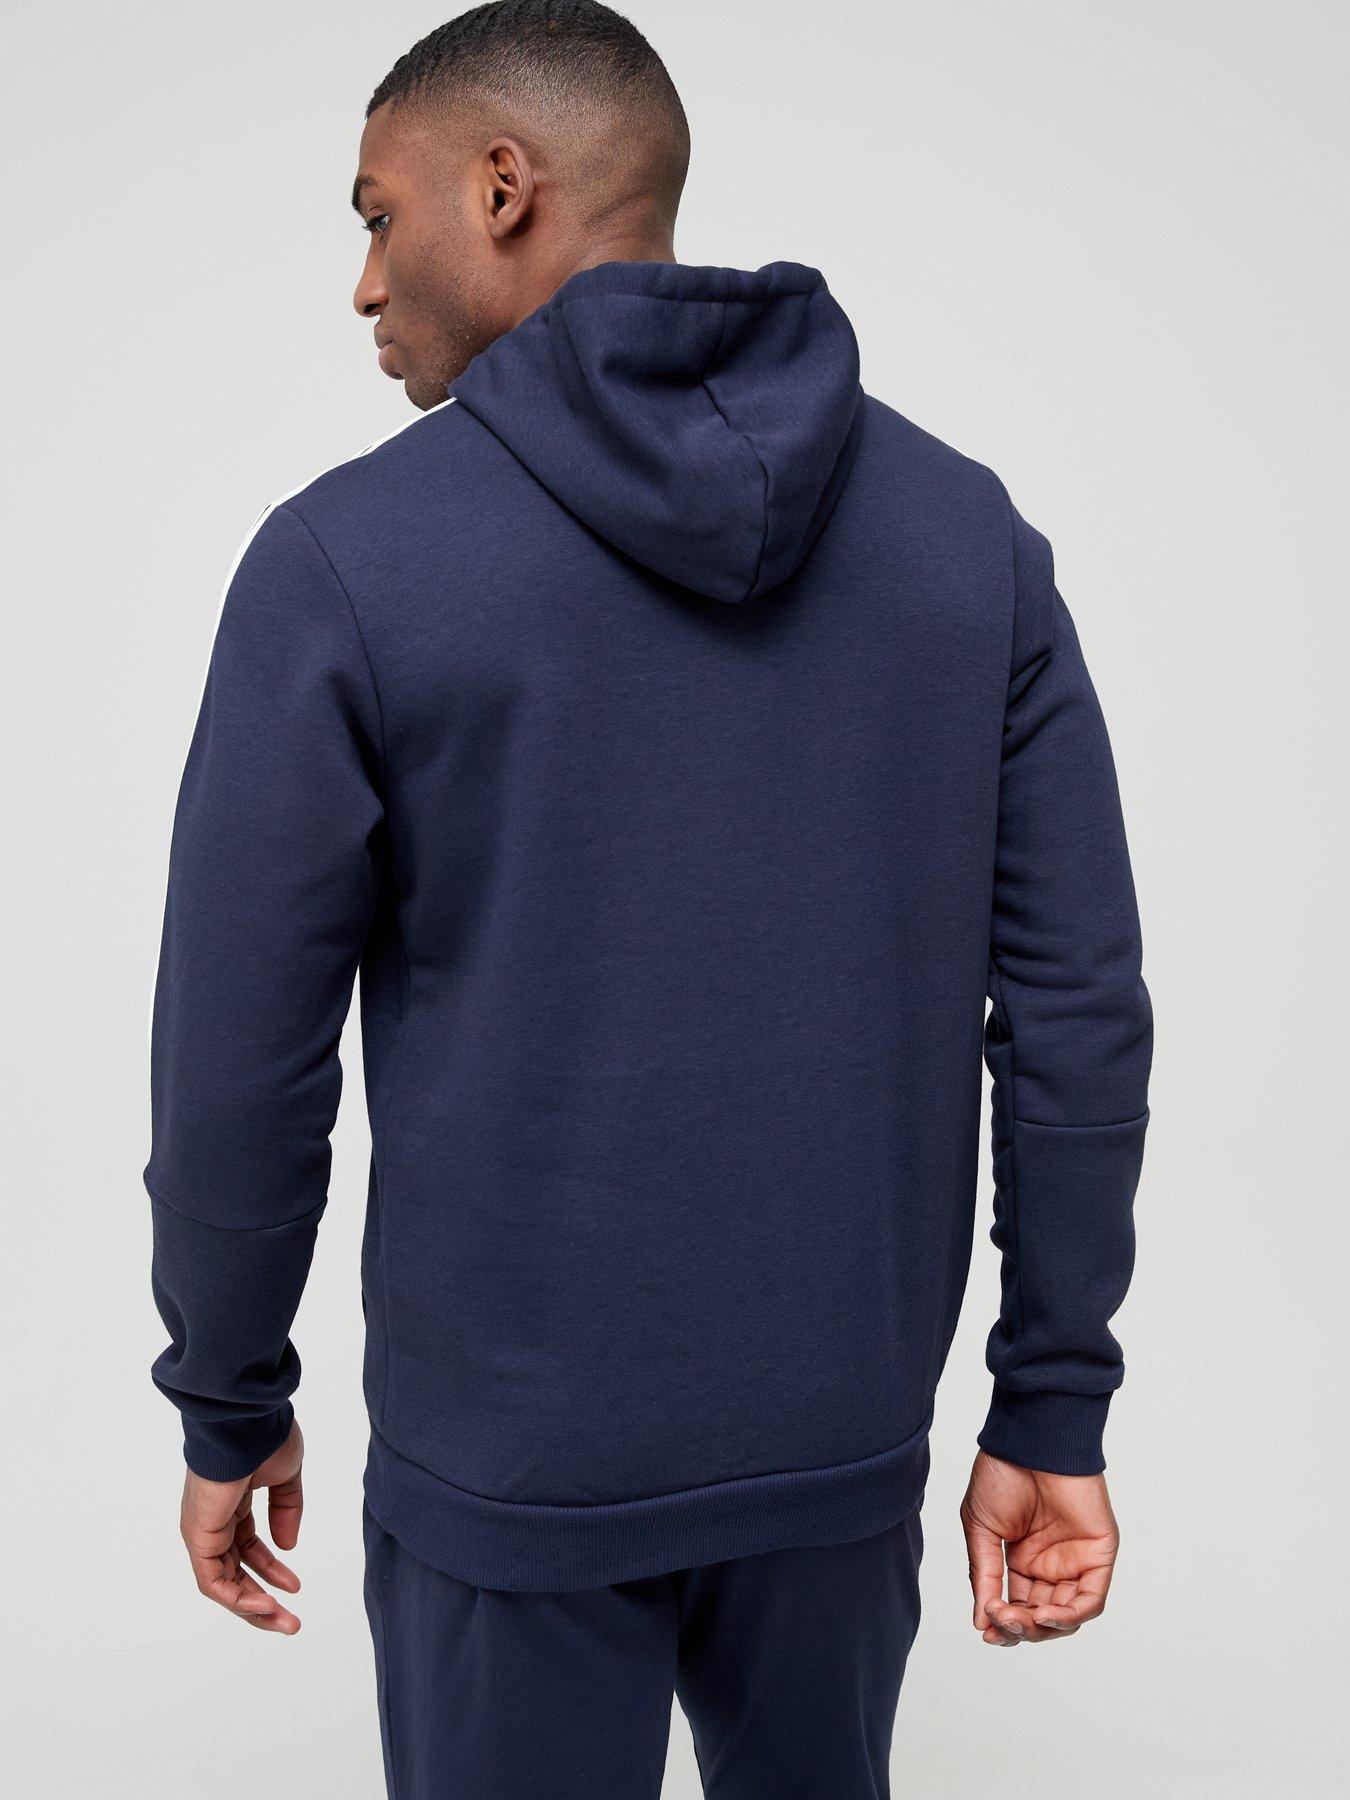 Hoodies & Sweatshirts Cut 3-Stripe Hoodie - Navy/White